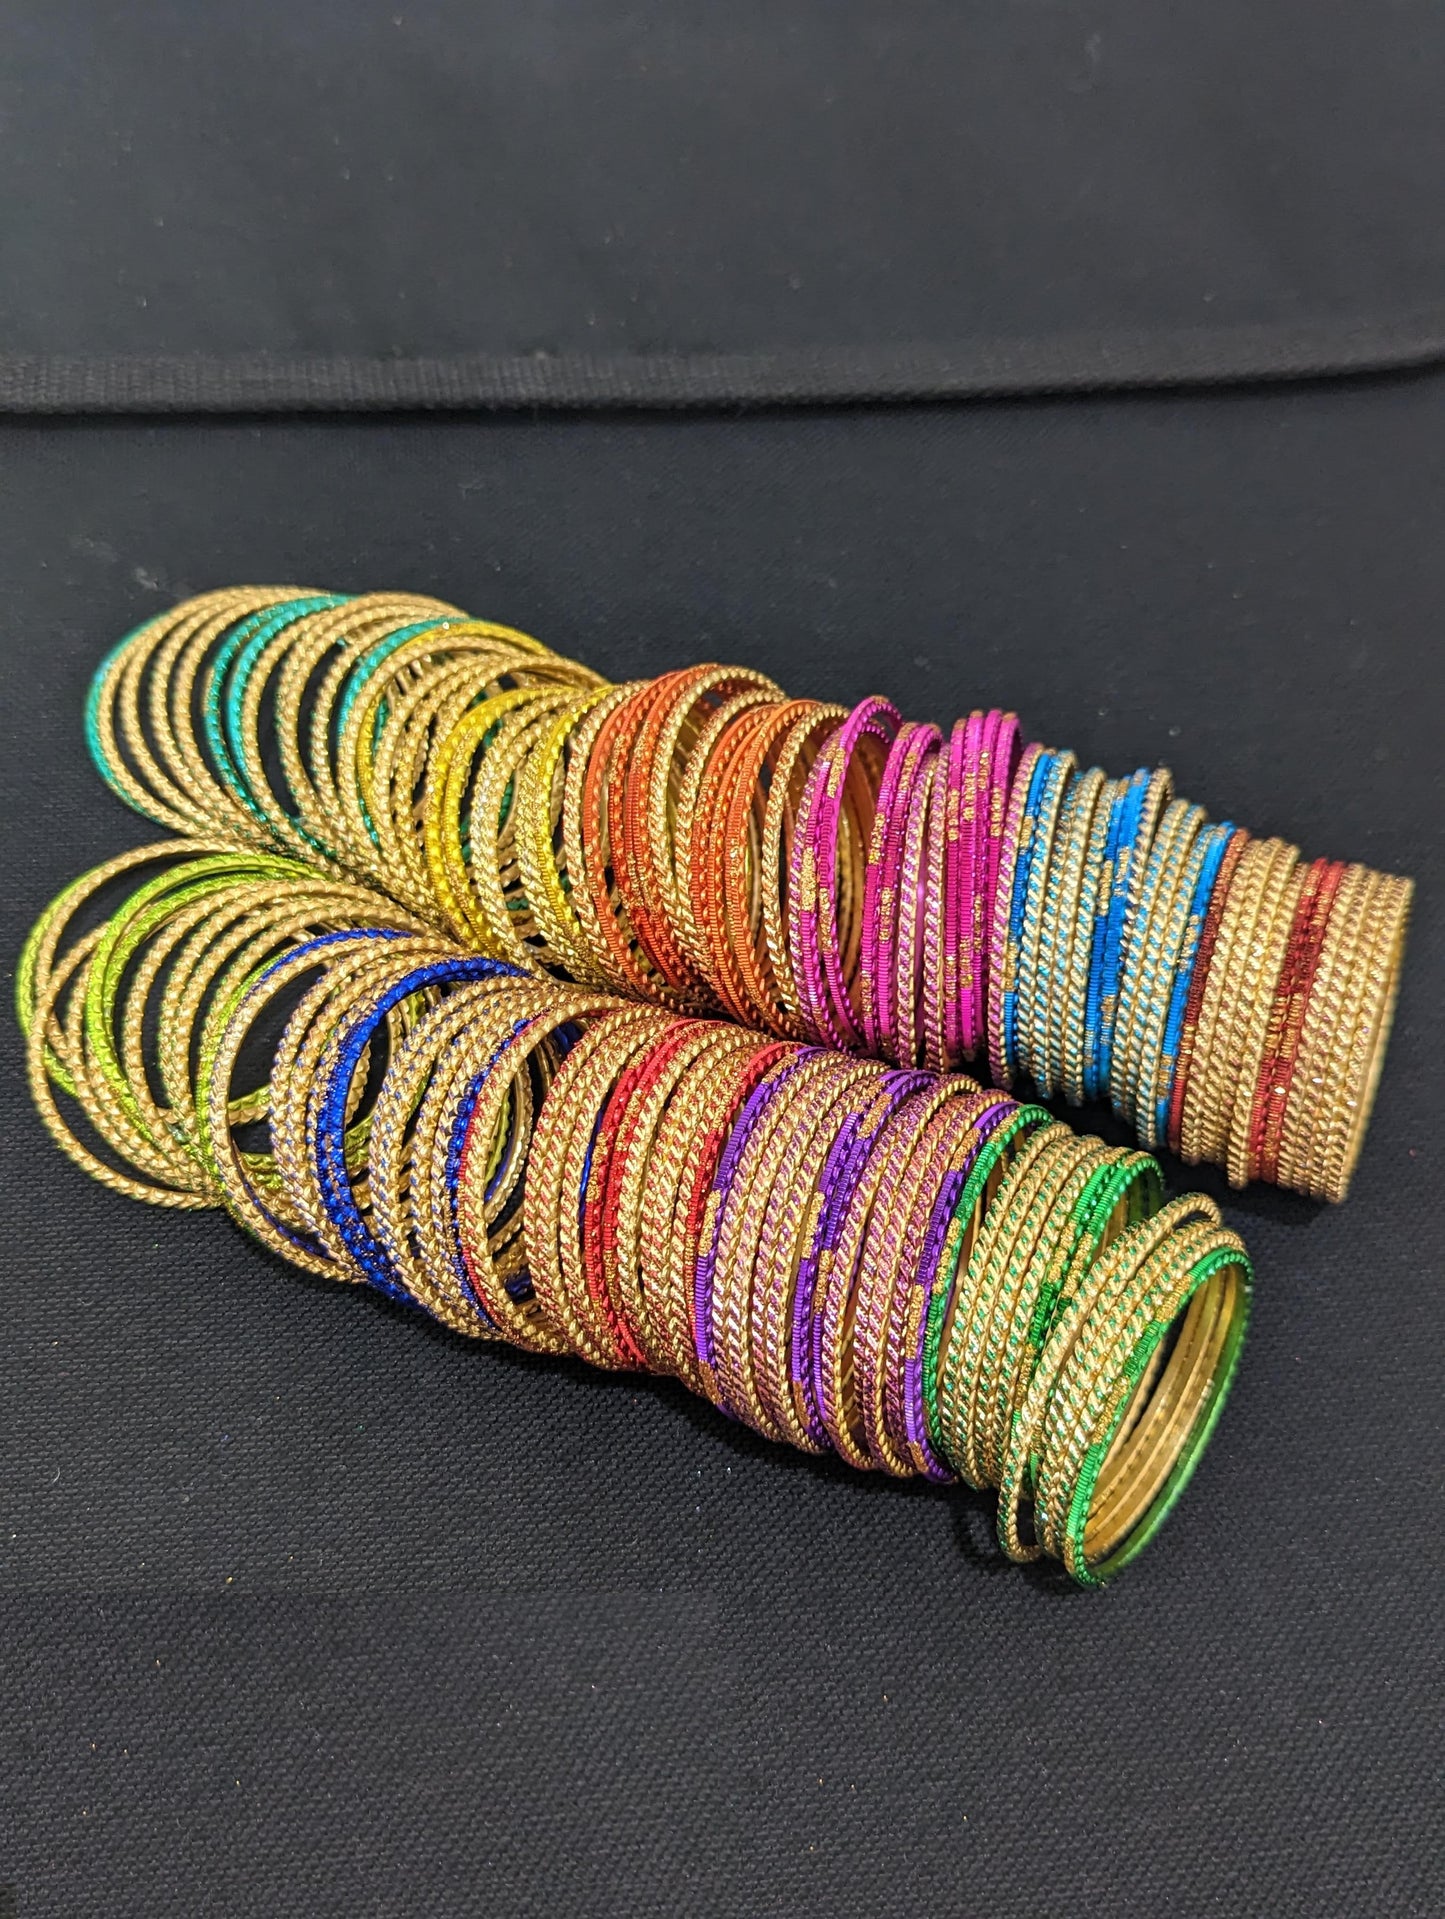 Colorful Thin Metal Bangles -1 dozen - Kids size